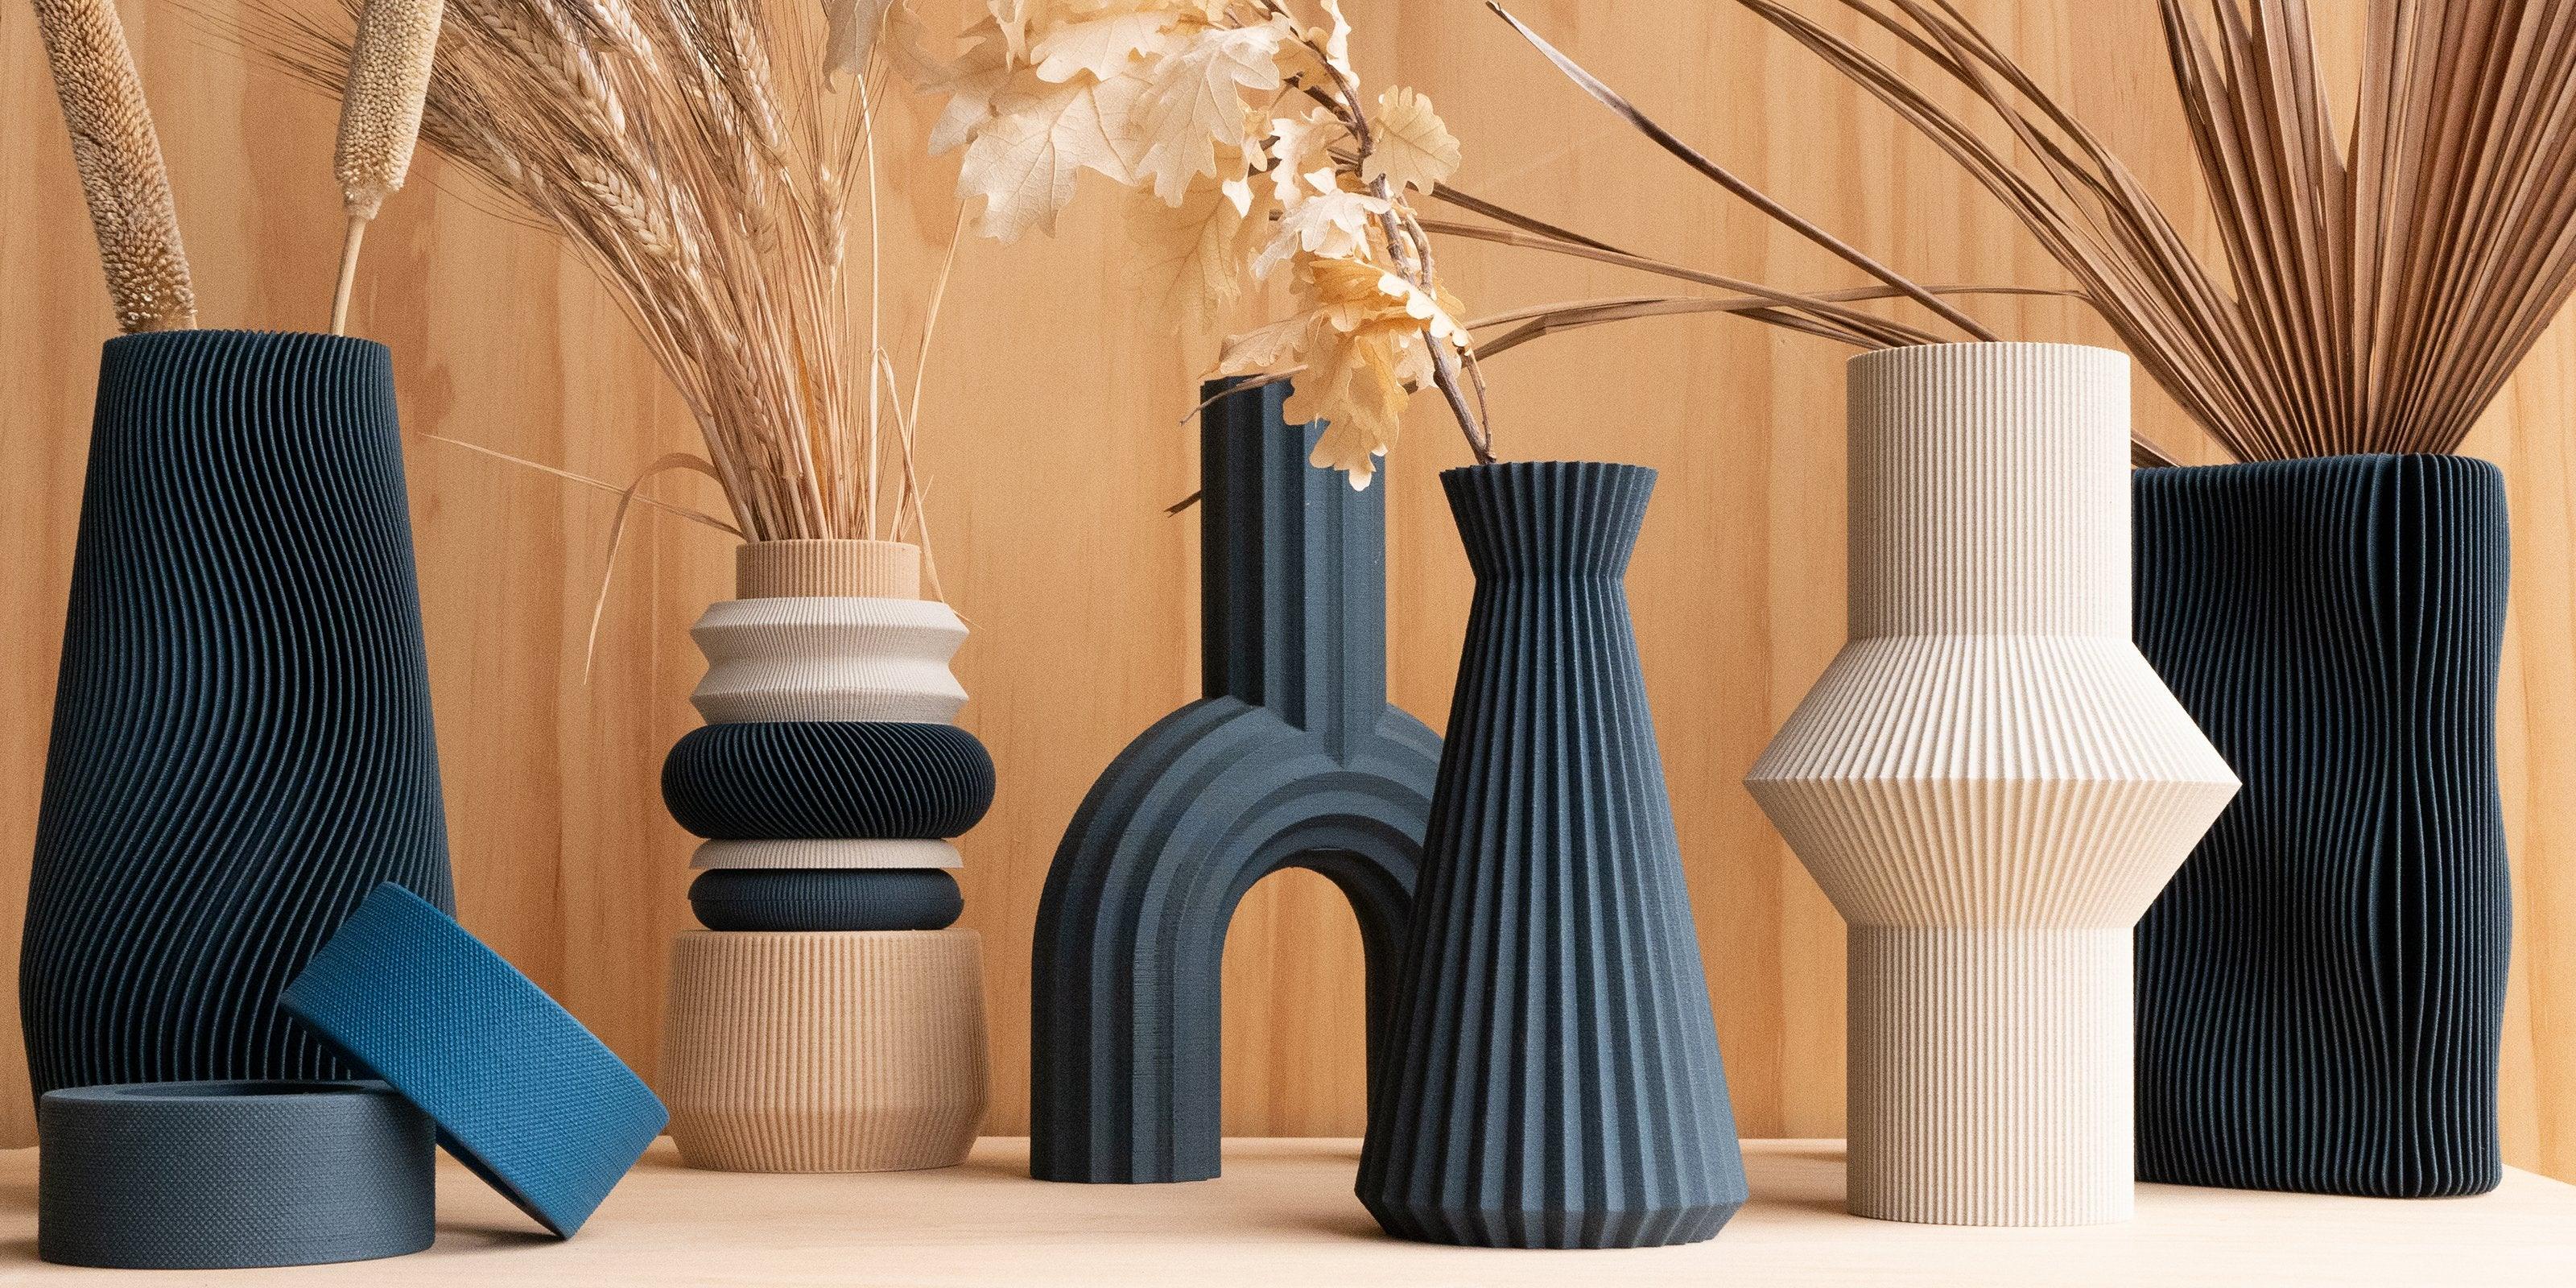 Vases - Minimum Design 